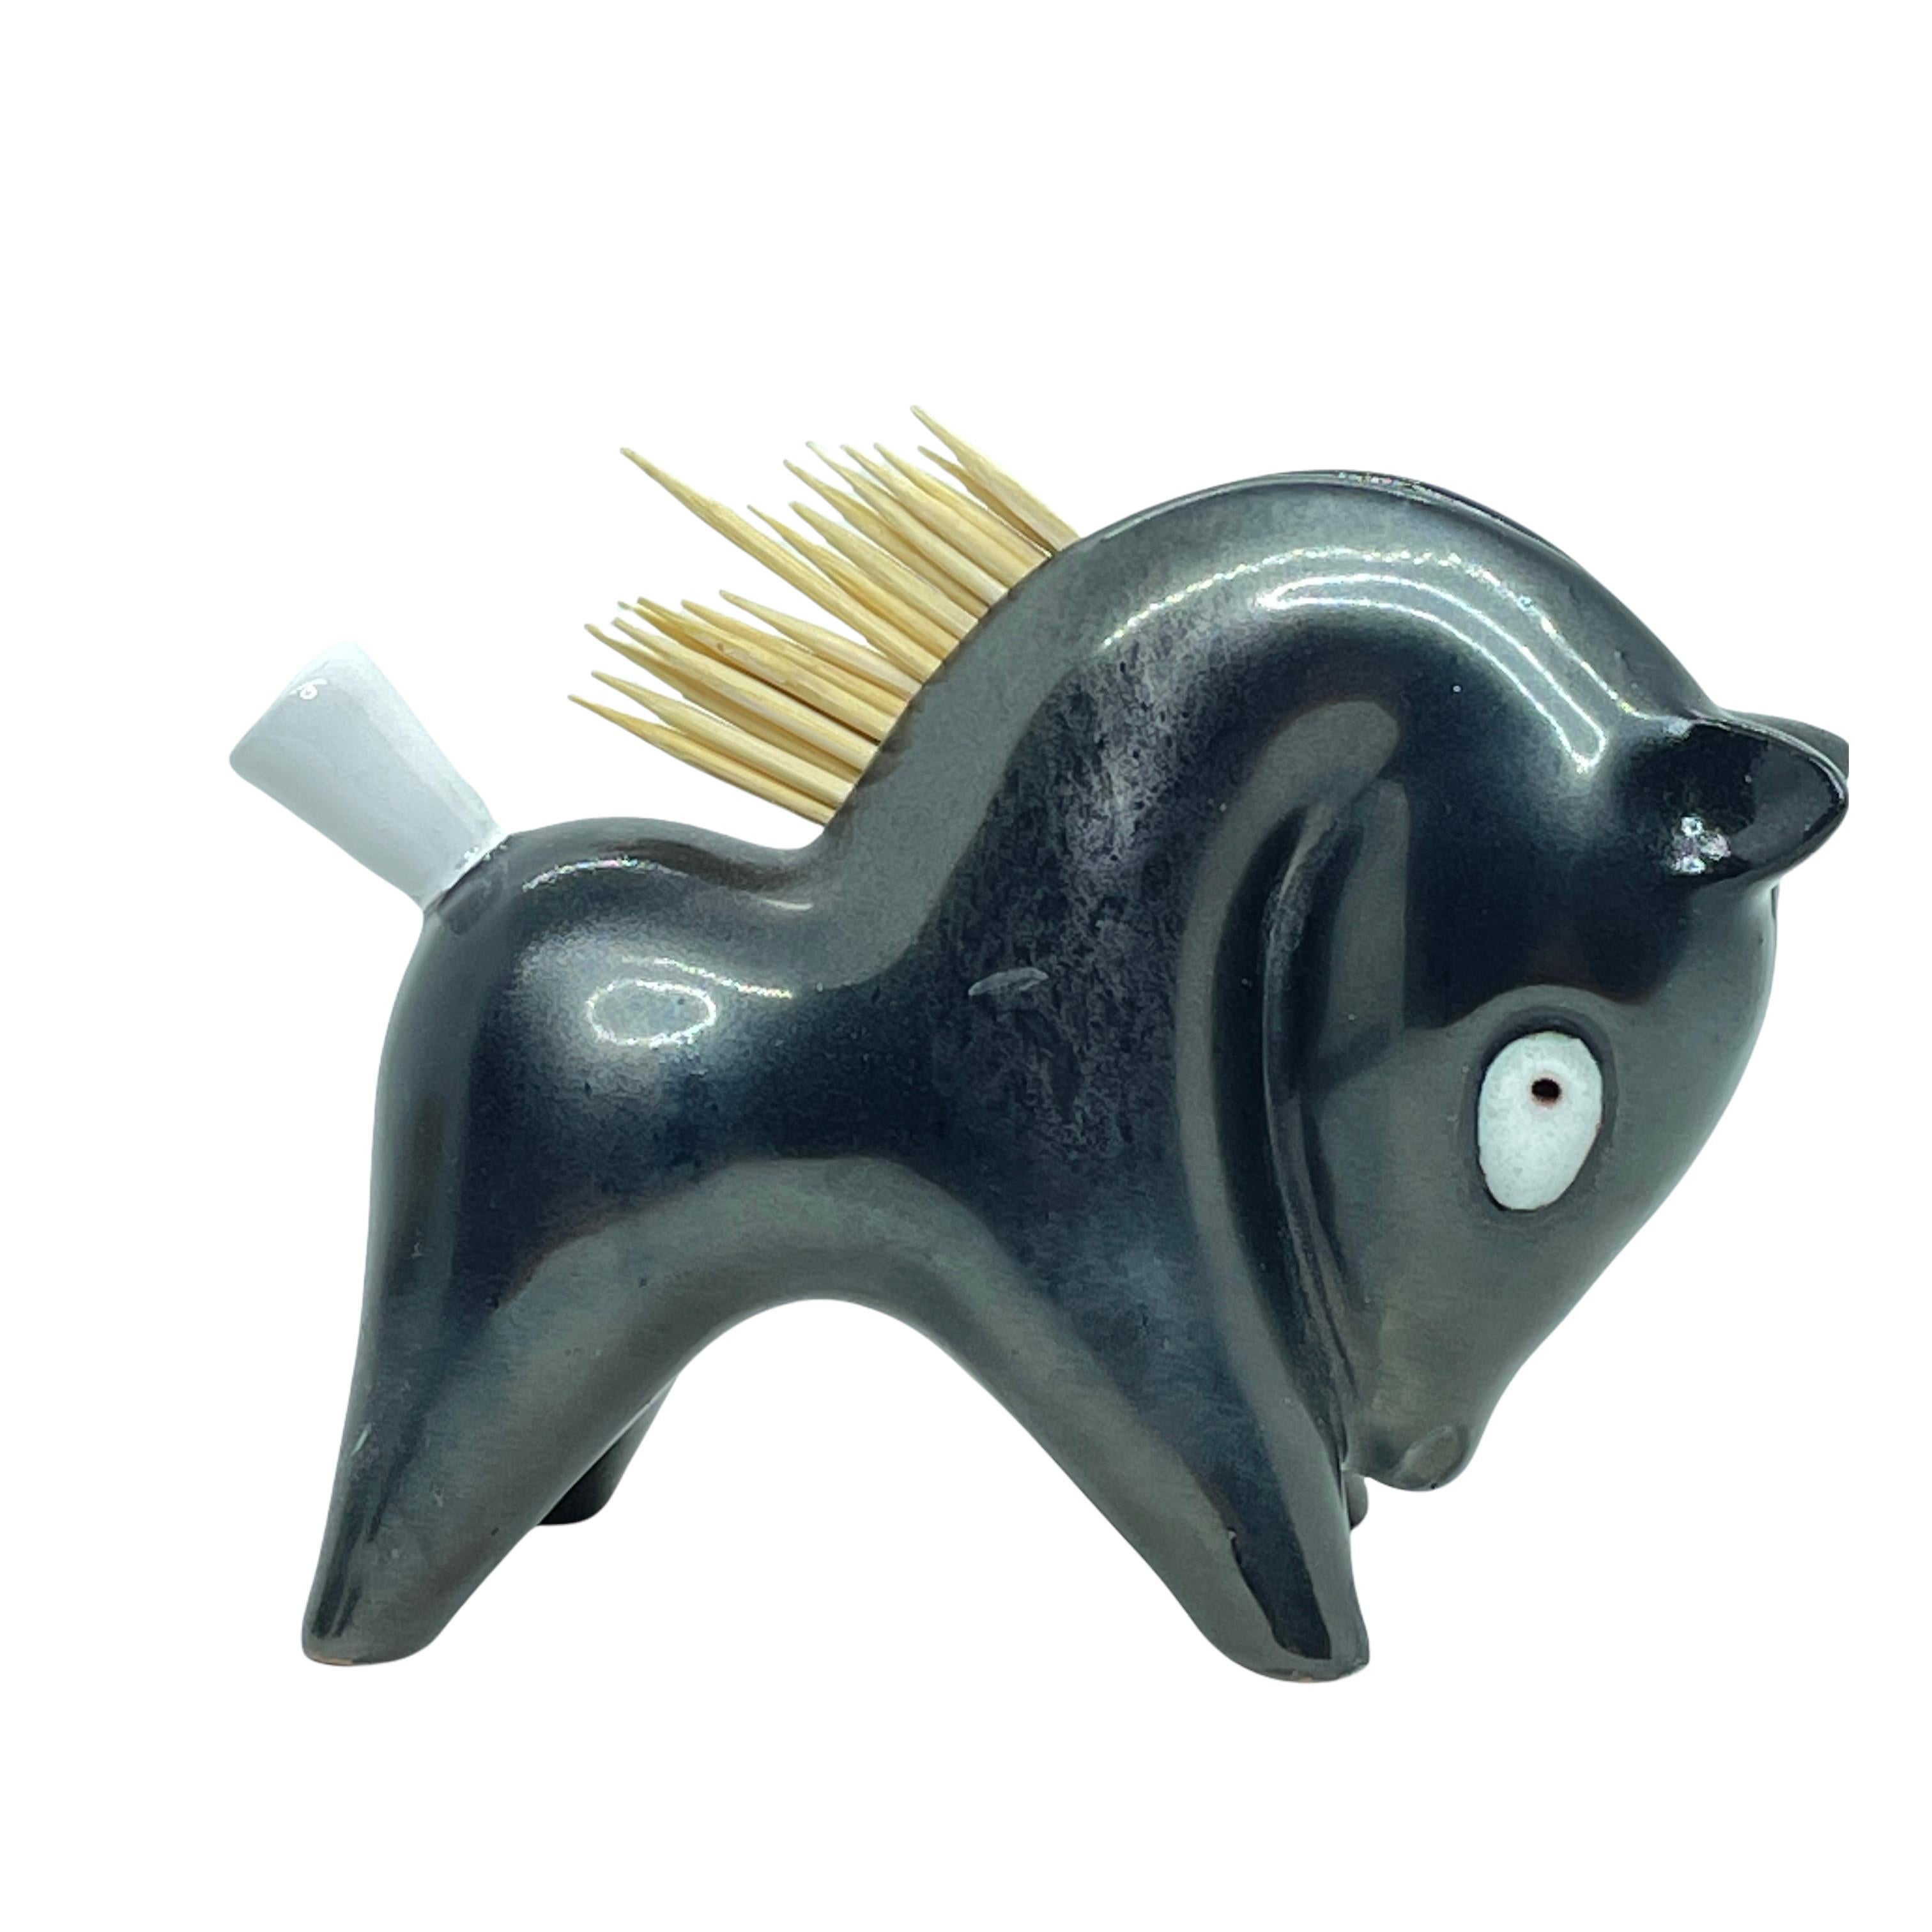 Eine dekorative Zahnstocherhalter-Figur im Vintage-Stil. Hergestellt aus Keramik in den 1950er Jahren. Ein hübsches Original, das man ausstellen oder einfach auf dem Tisch verwenden kann. Die auf den Bildern gezeigten Zahnstocher sind nicht in